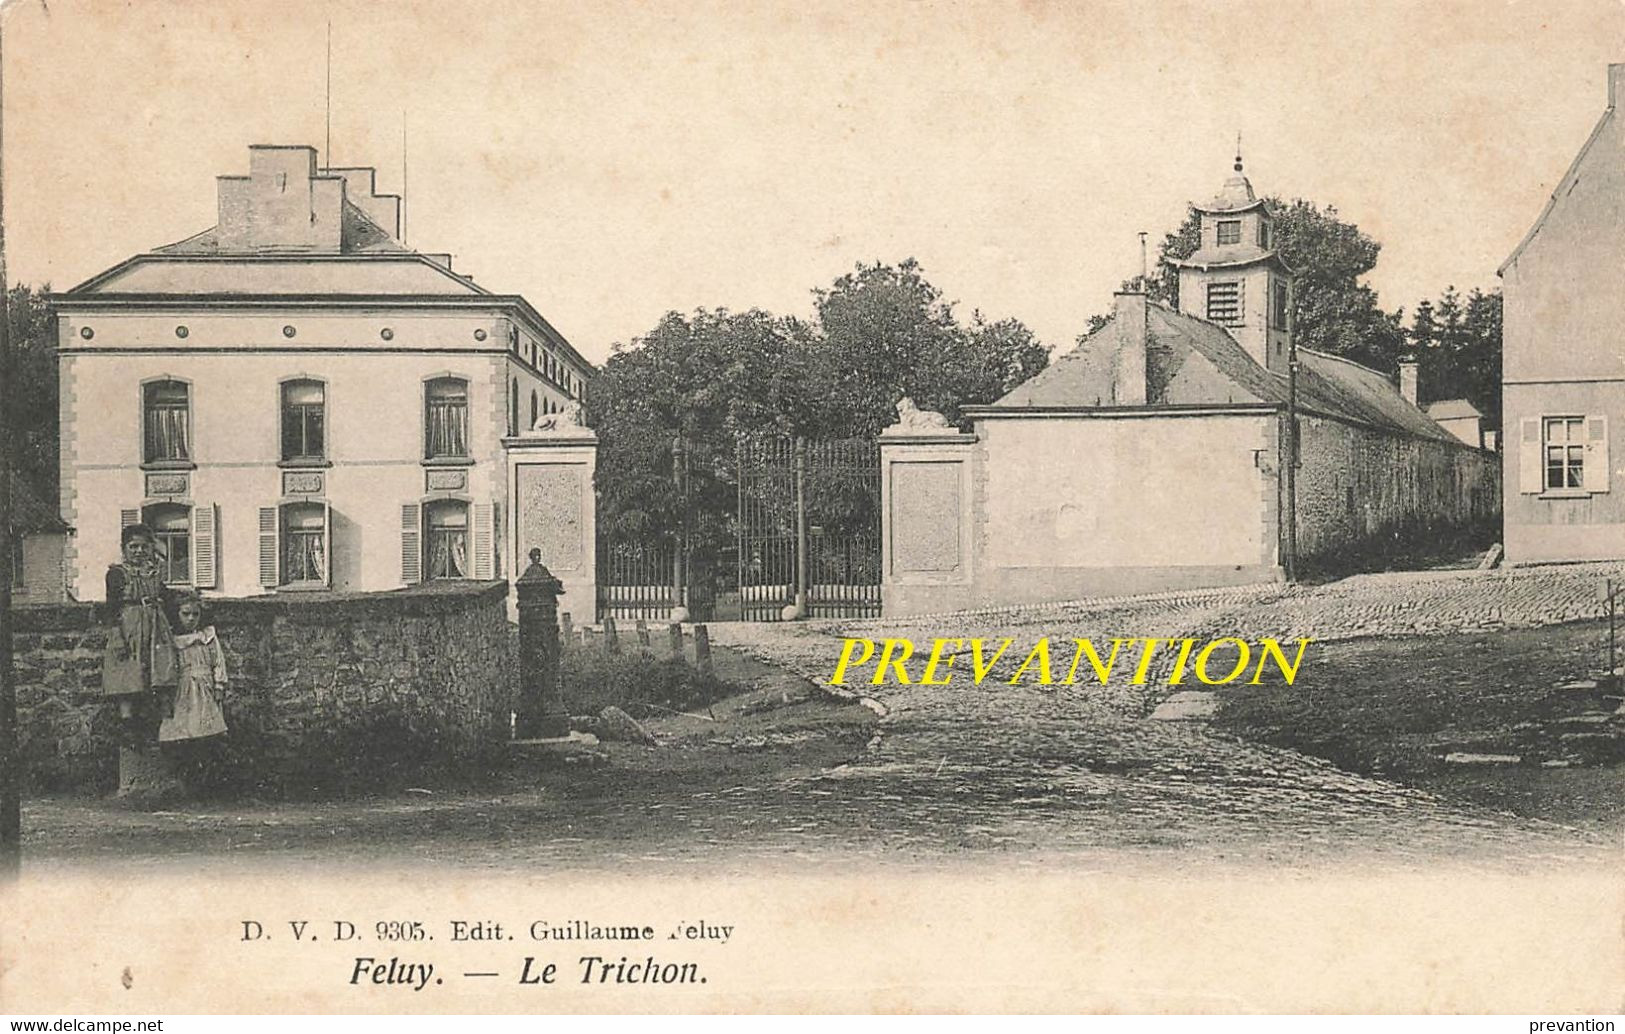 FELUY - Le Trichon (D.V.D 9305 - Edit: Guillaume Feluy) - Seneffe